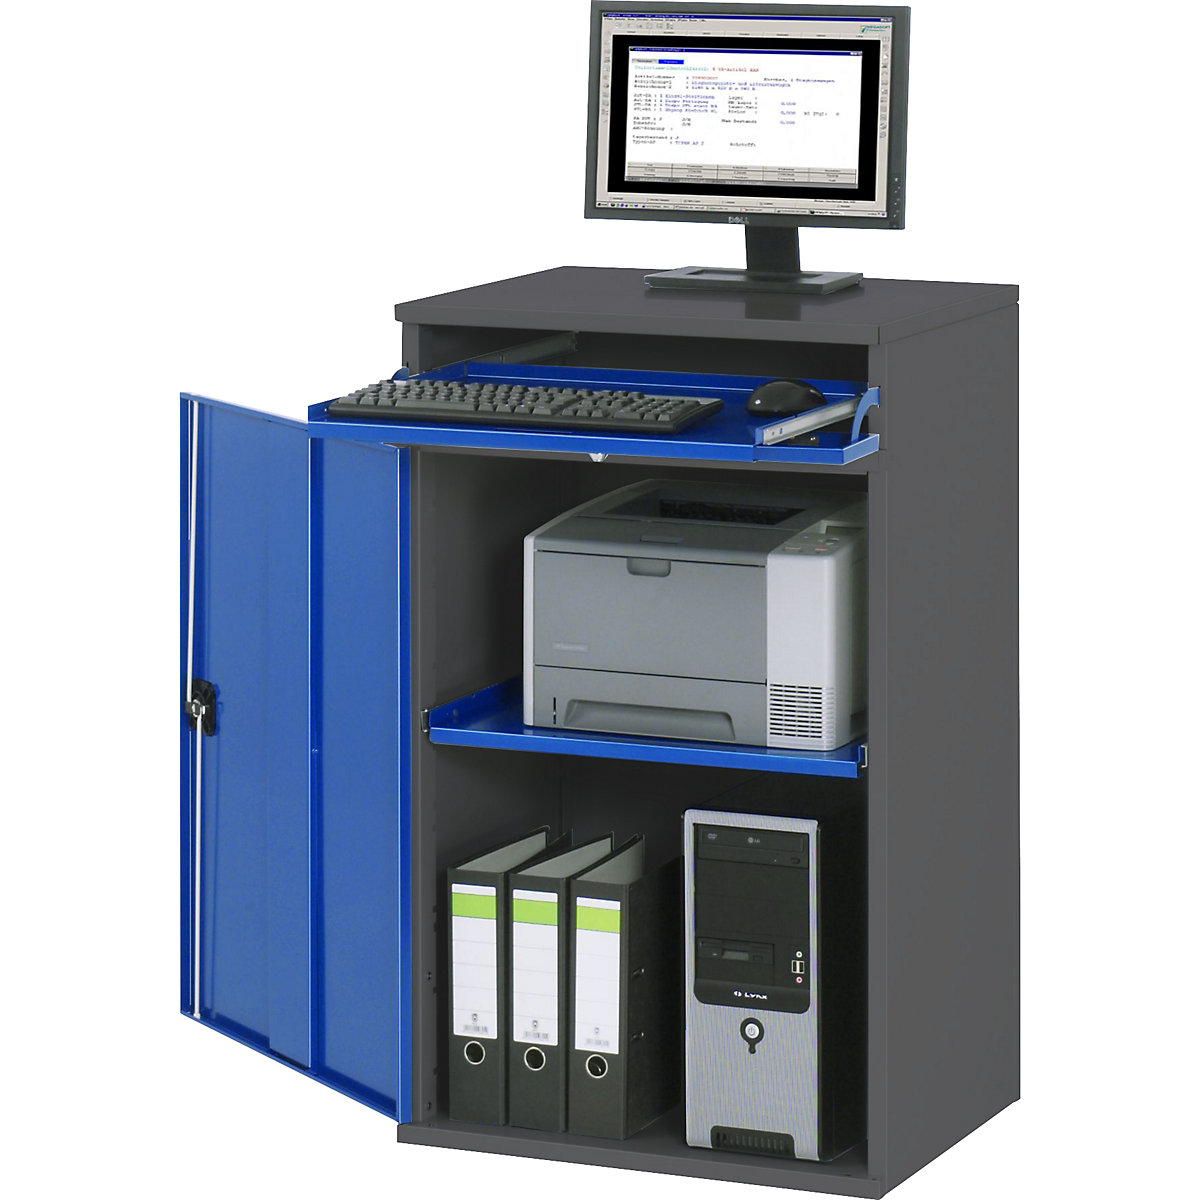 RAU – Komputerowa stacja robocza, obudowa na szafę z 1 wyciąganą półką, szer. 650 mm, antracytowy / niebieski gencjanowy